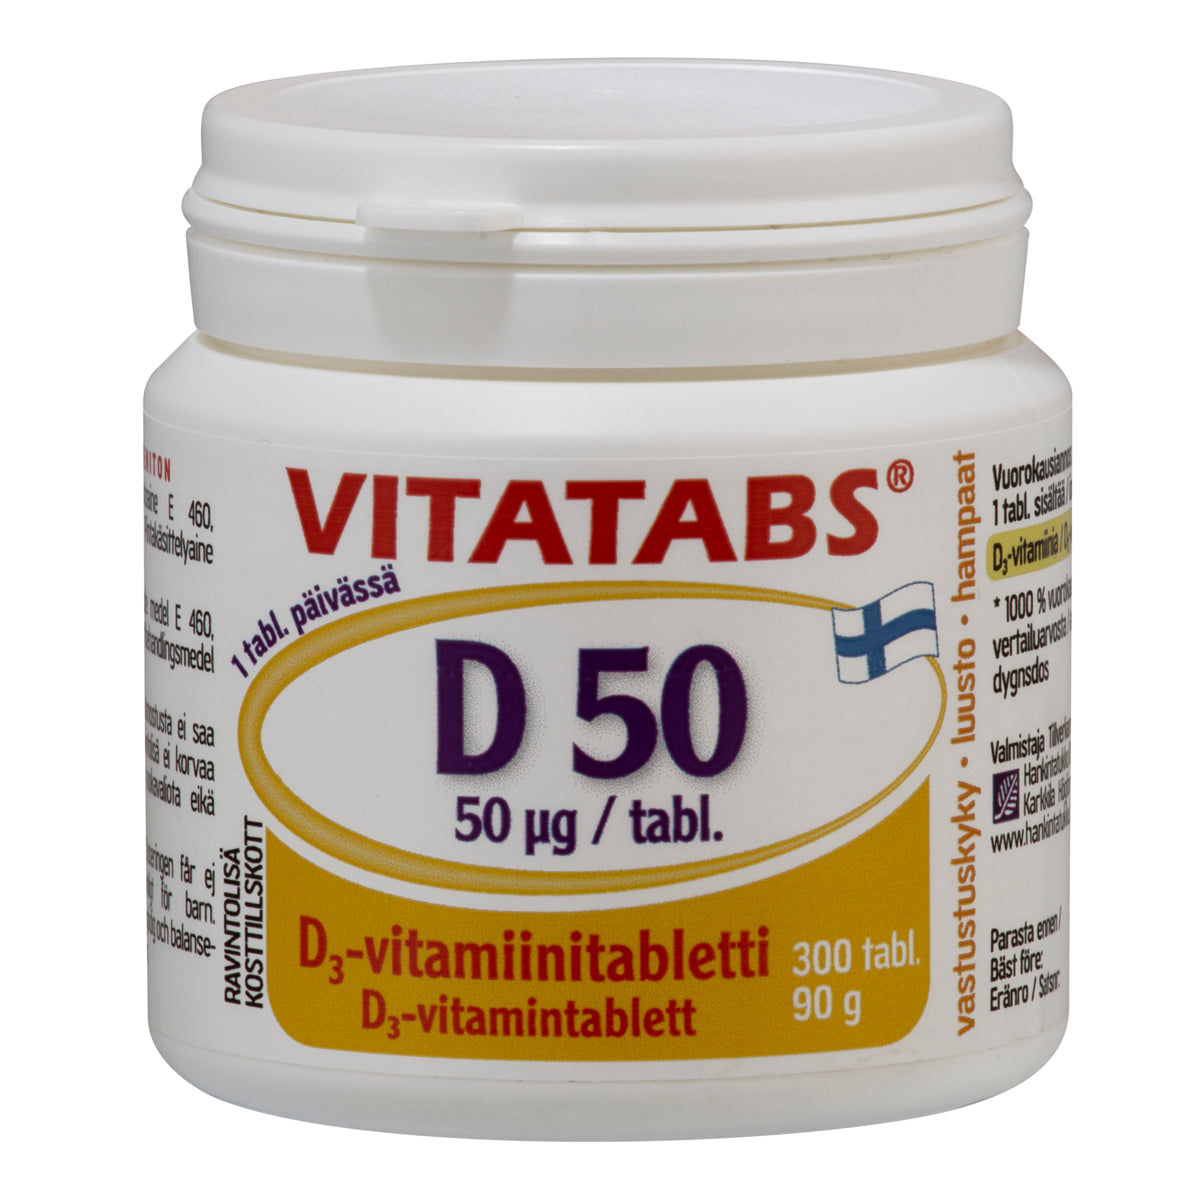 Vitatabs D 50 300 tabl. Vahva D-vitamiinivalmiste, pienikokoinen ja helposti nieltävä tabletti. Sisältää D3-vitamiinia 50 µg. Vastustuskykyyn, luustolle ja hampaille. Valmistettu Suomessa. 